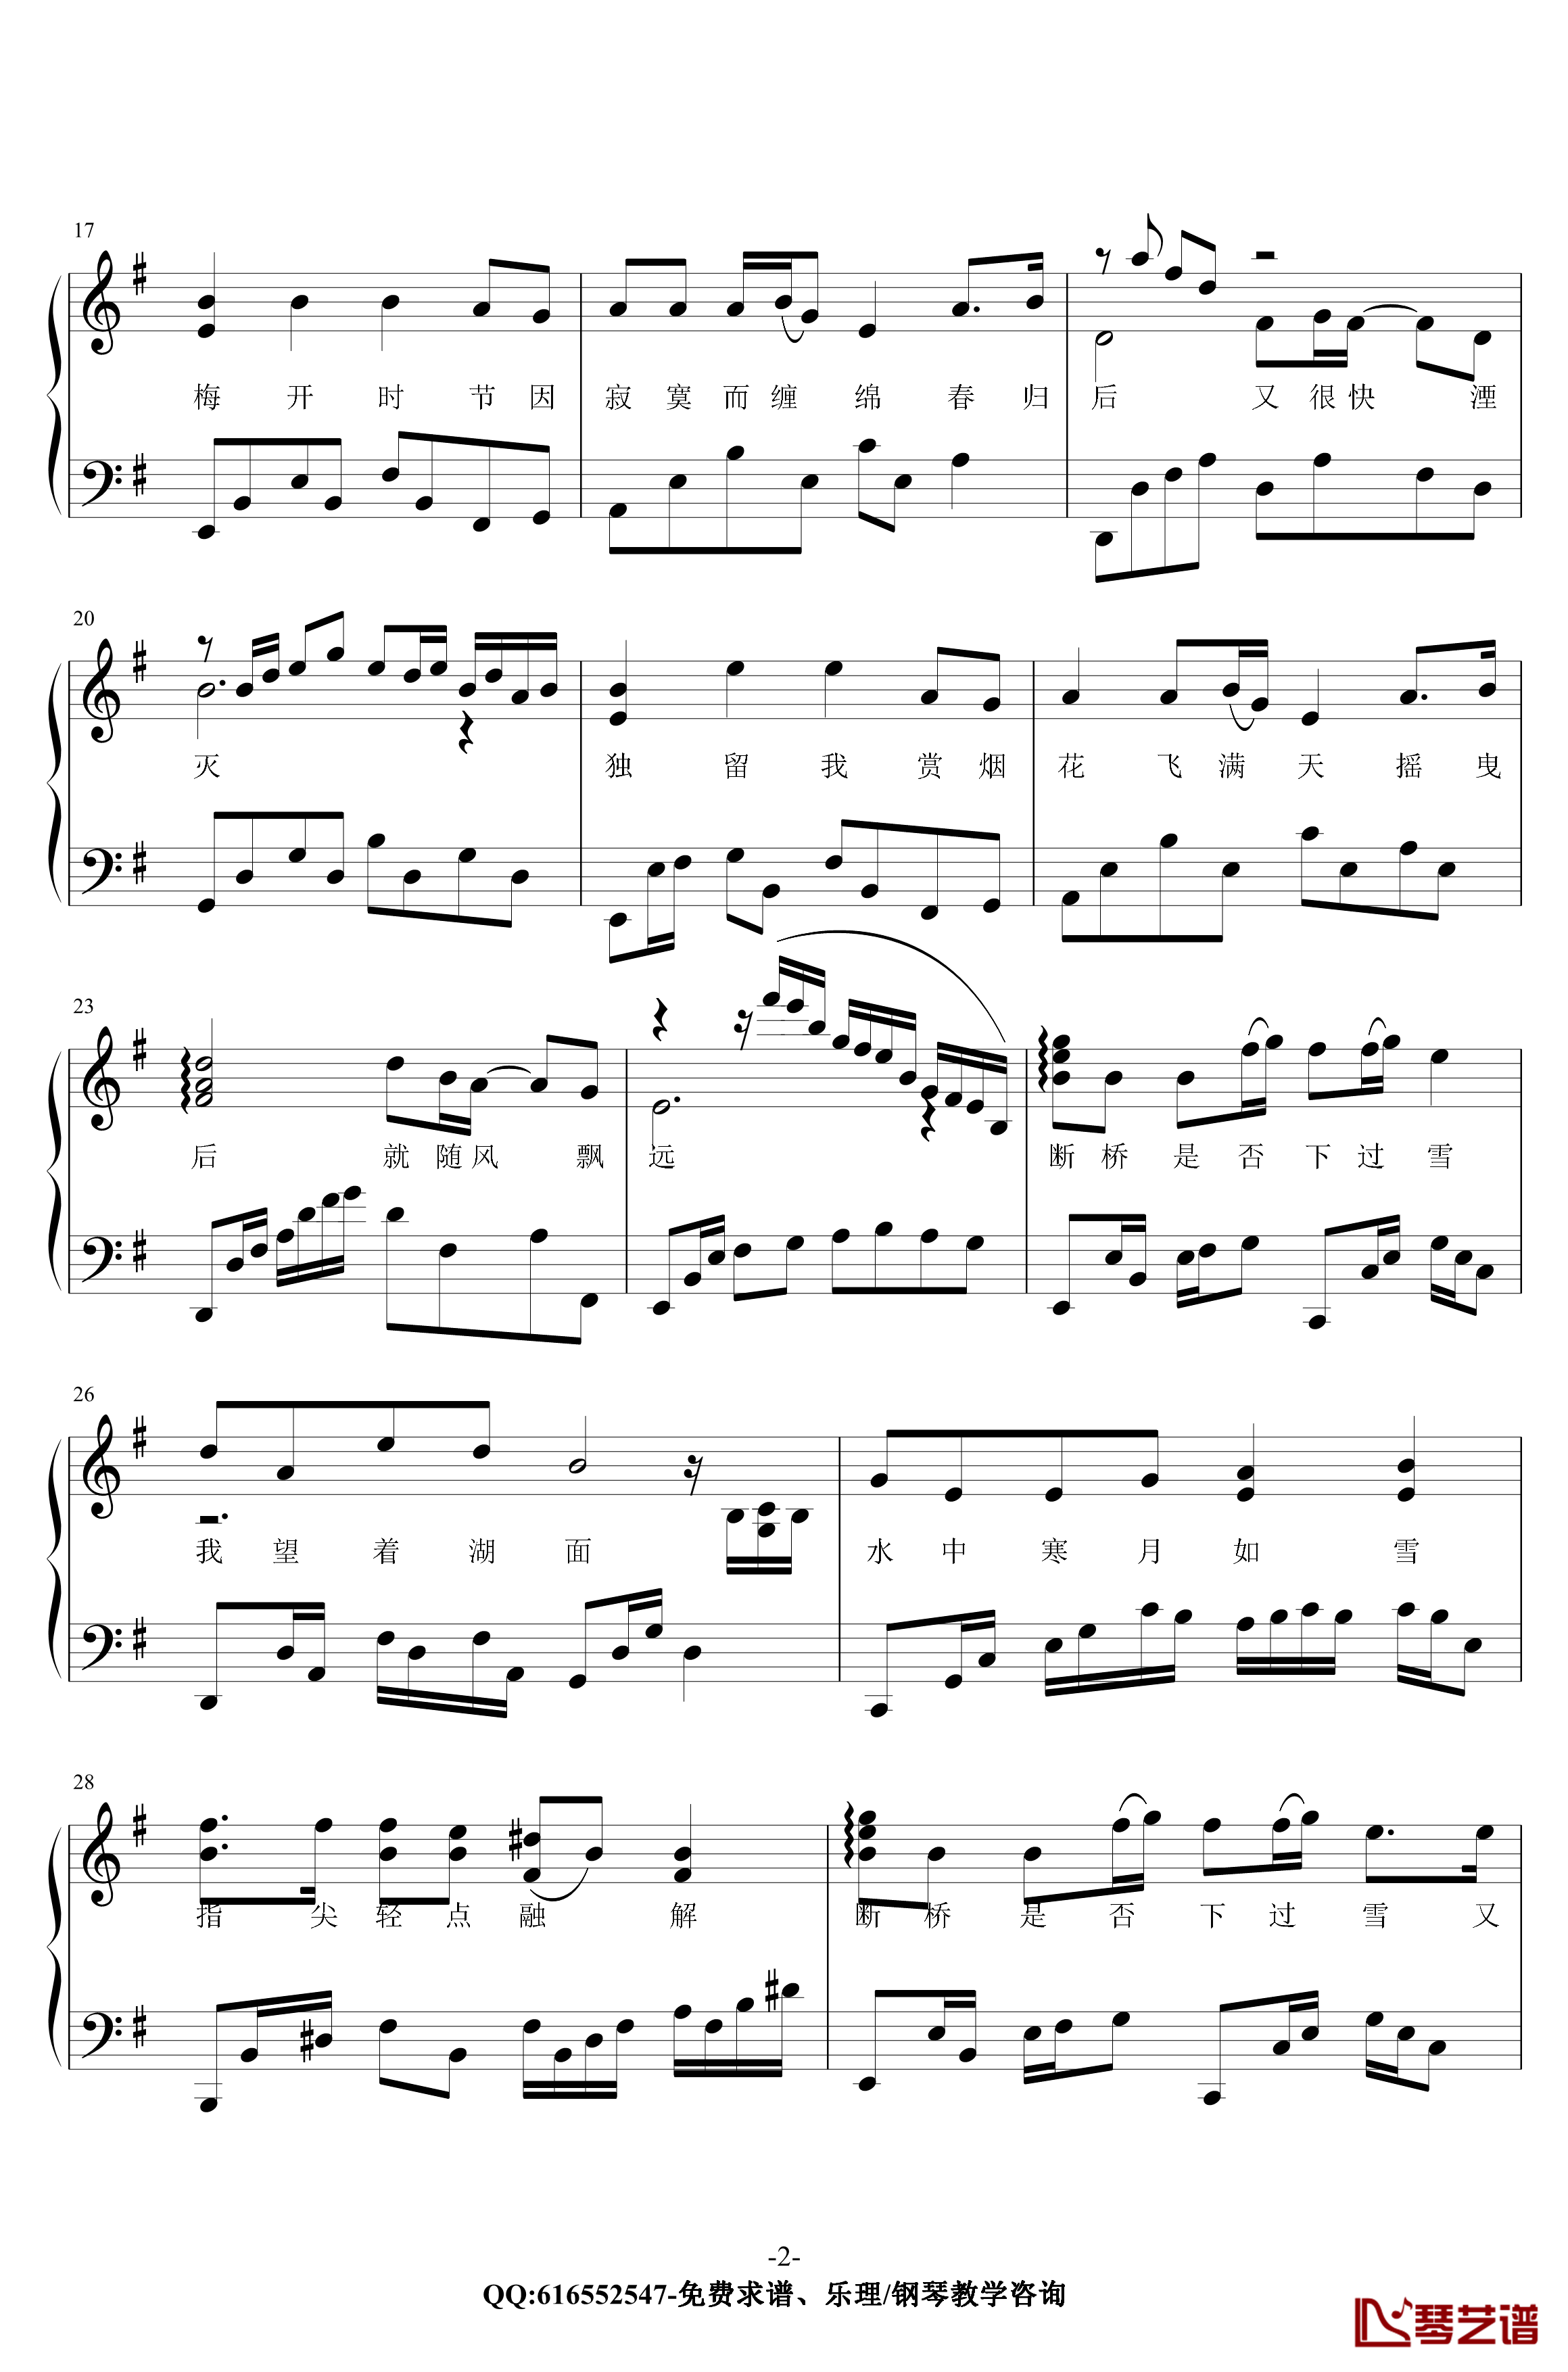 断桥残雪钢琴谱-金老师原声独奏版180117-许嵩